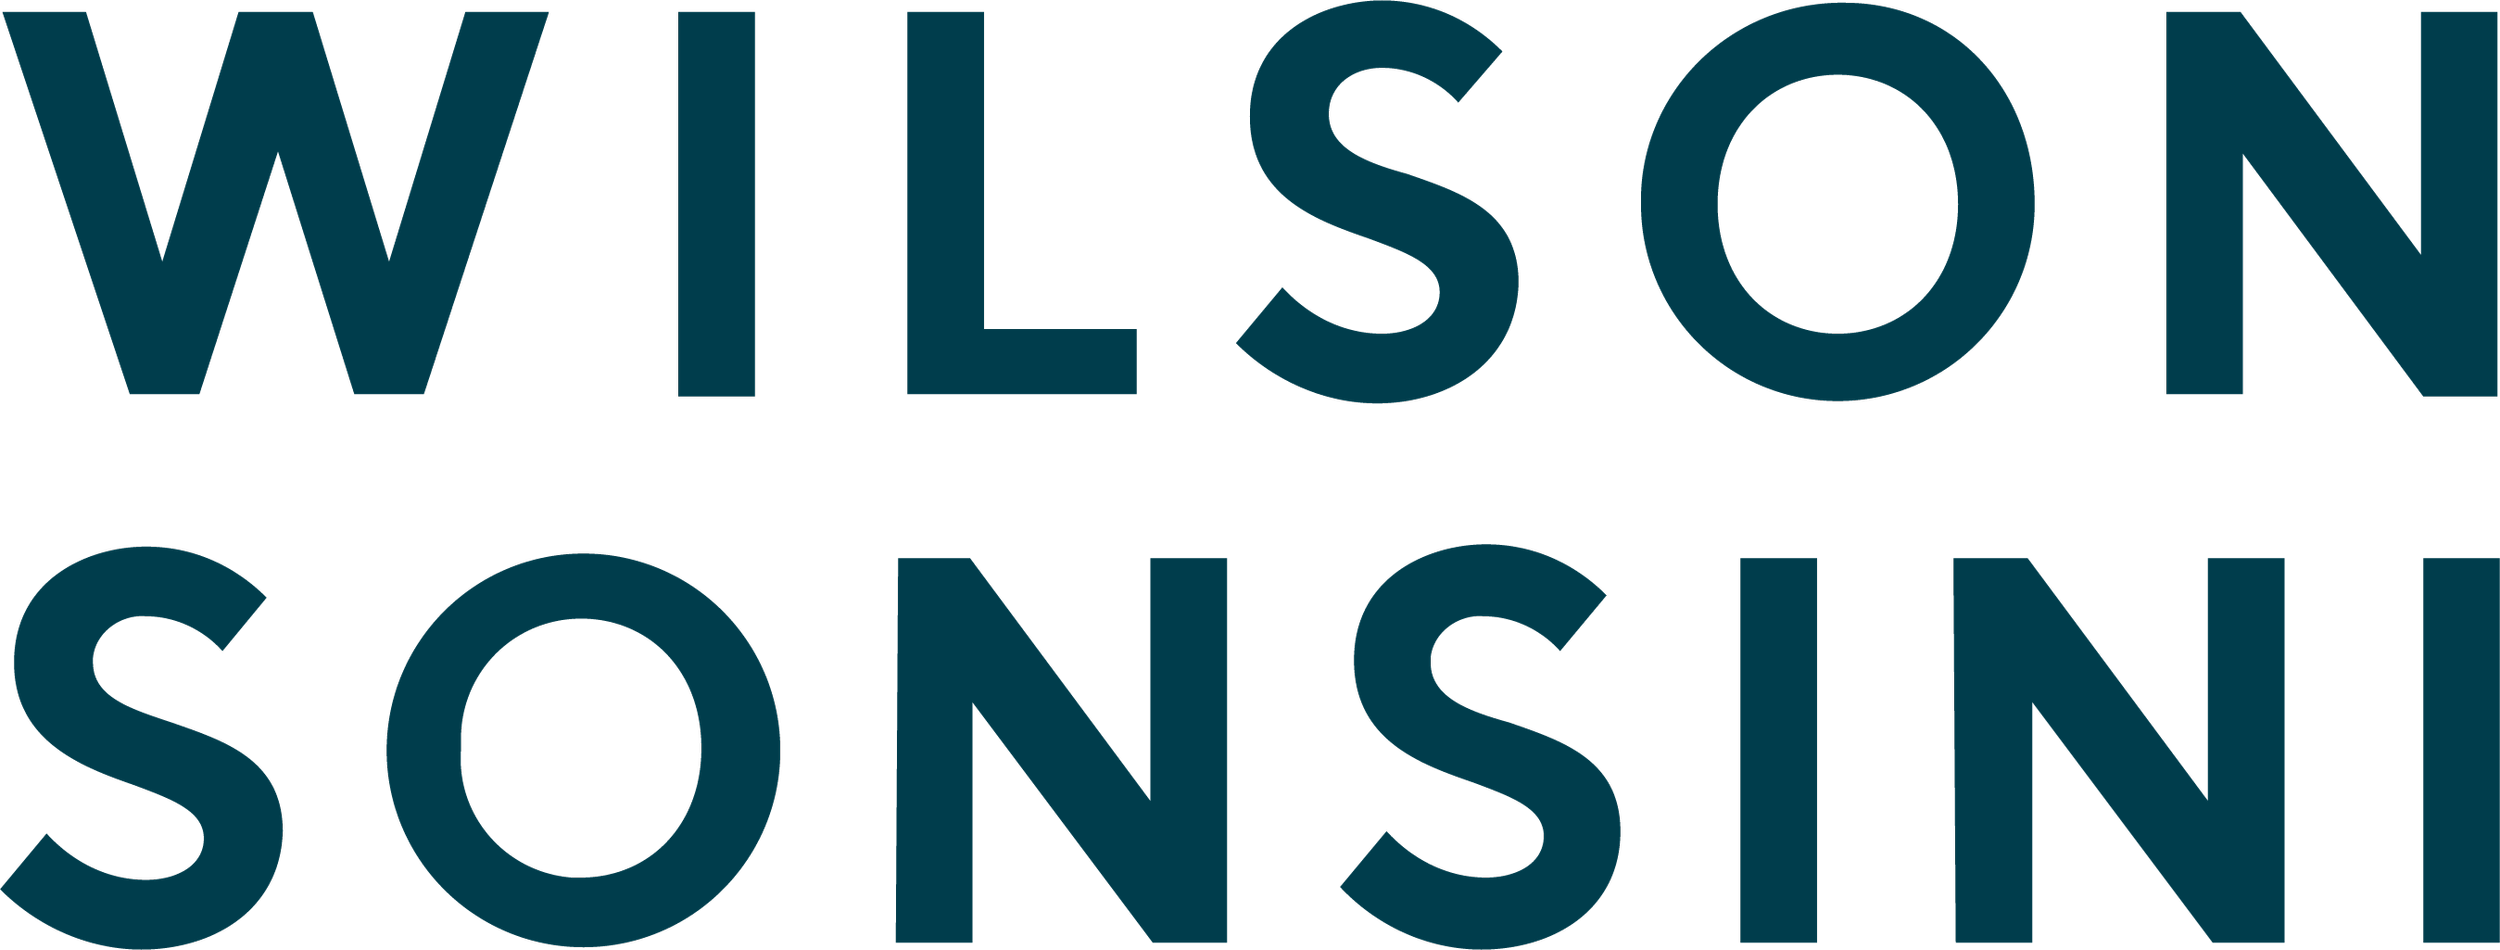 Wilson Sonsini logo.png